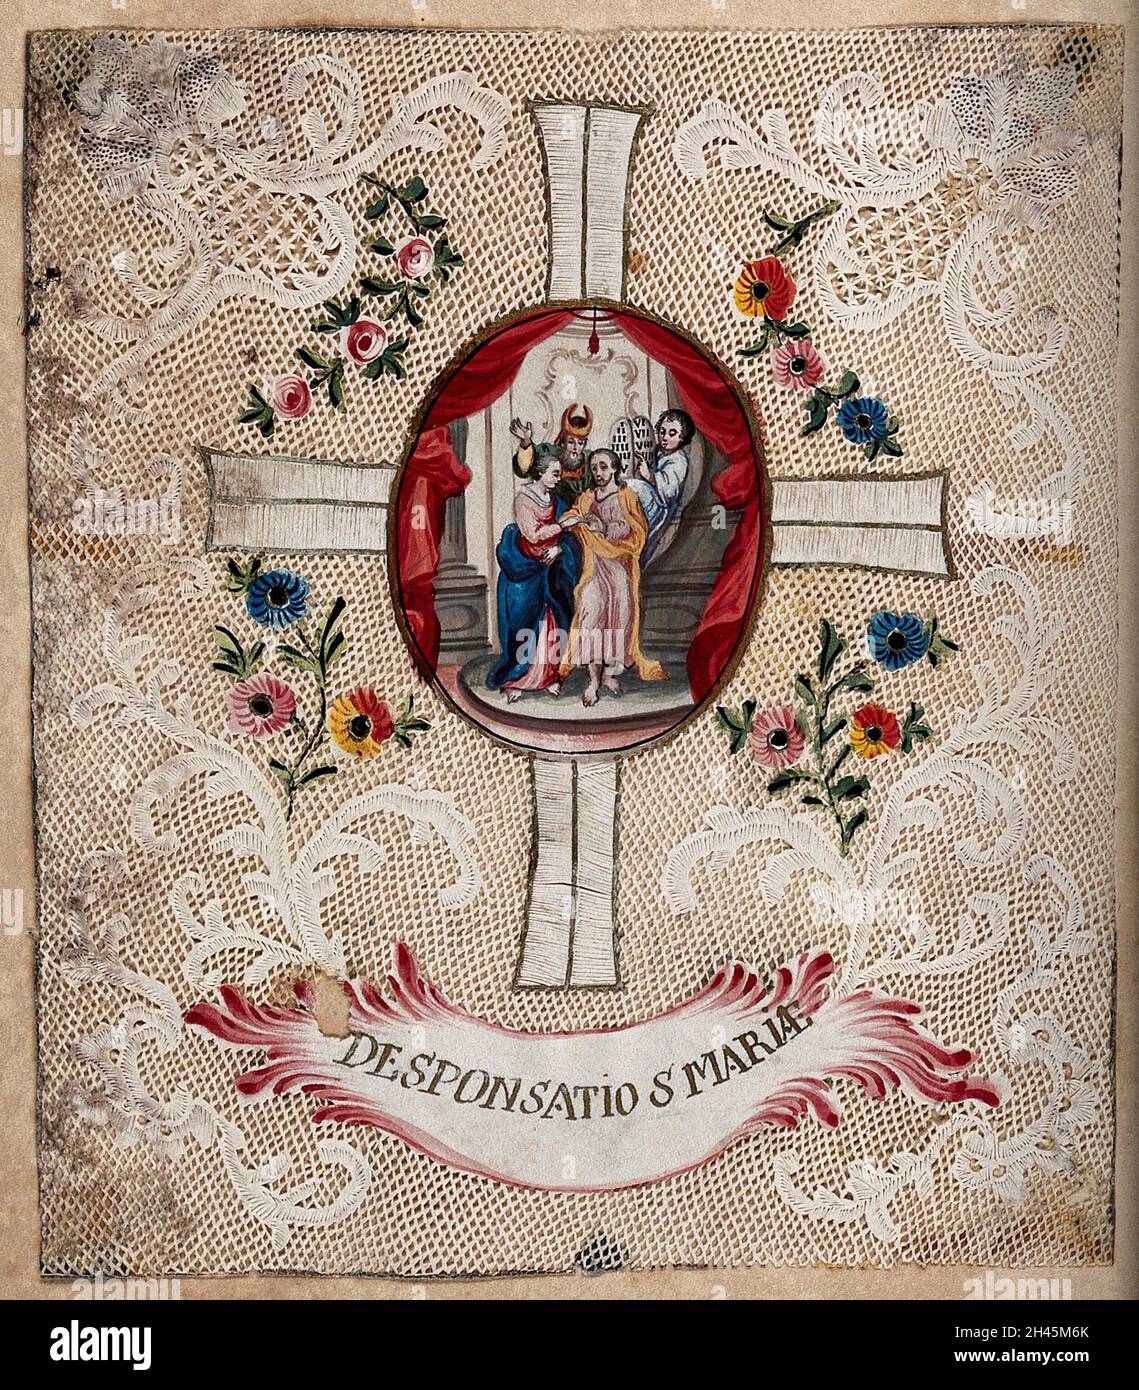 Le betrothal de la Vierge et de Saint Joseph, avec une frontière en filigrane.Papier découpé coloré. Banque D'Images